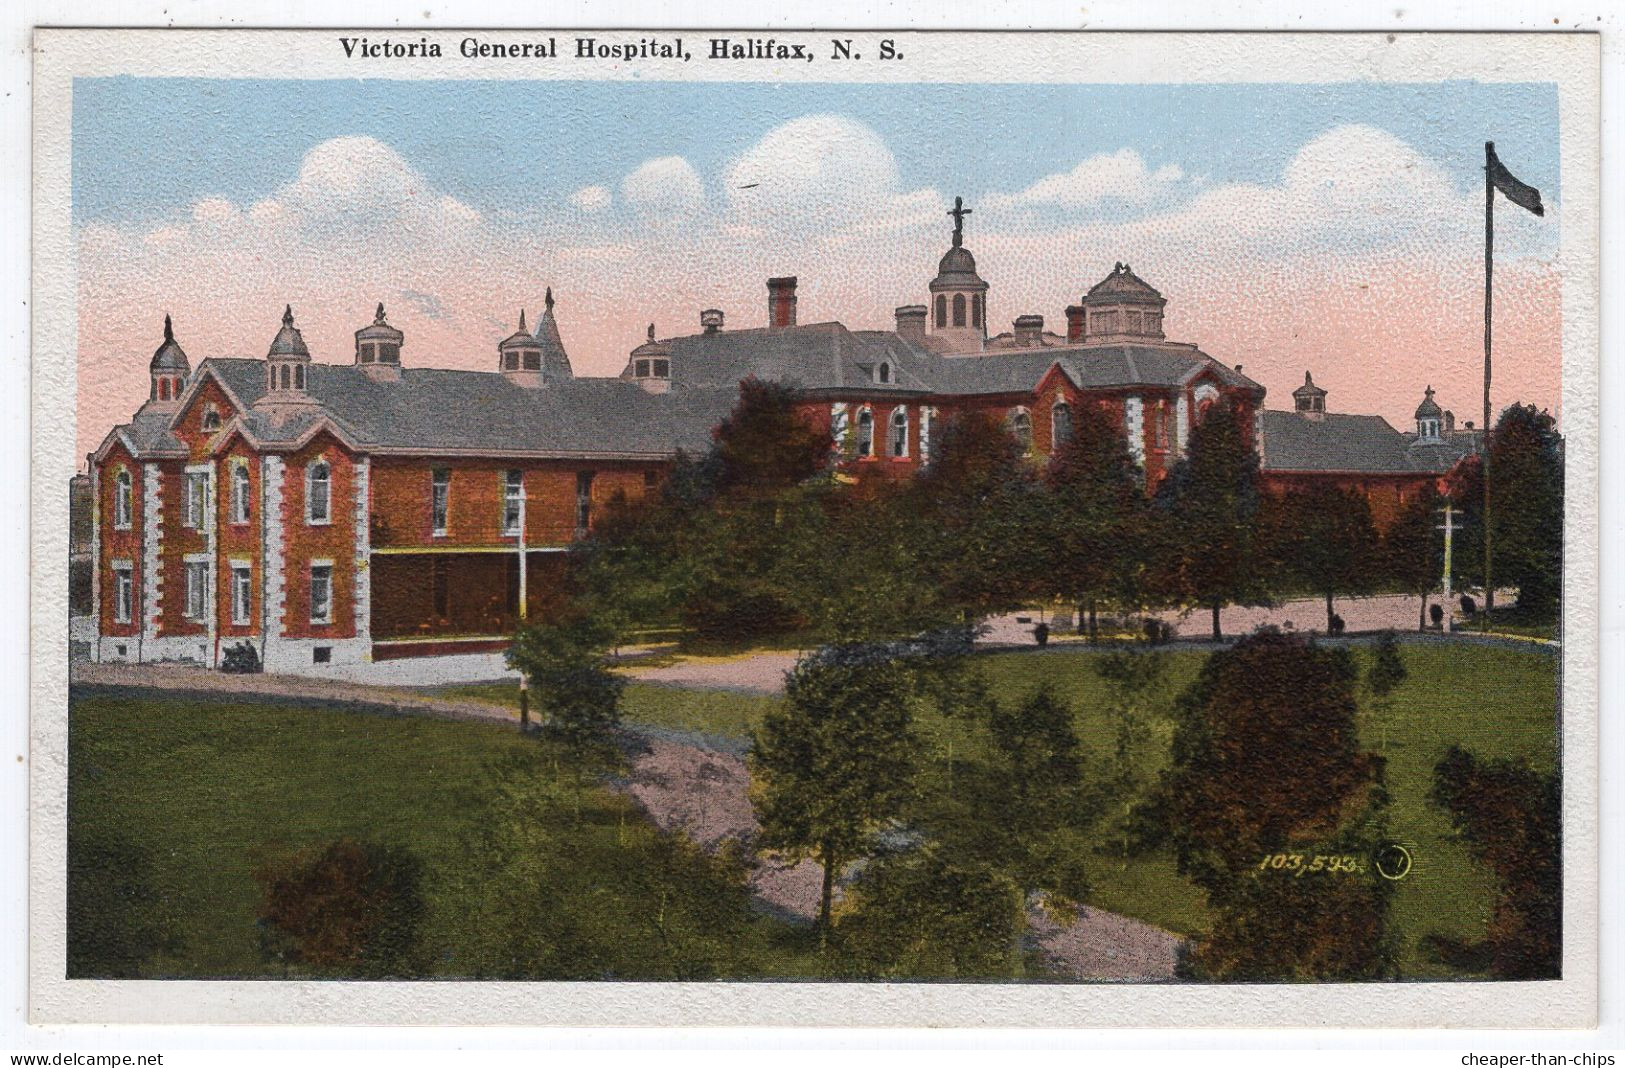 HALIFAX - Victoria General Hospital - Valentine 103,593 - Halifax